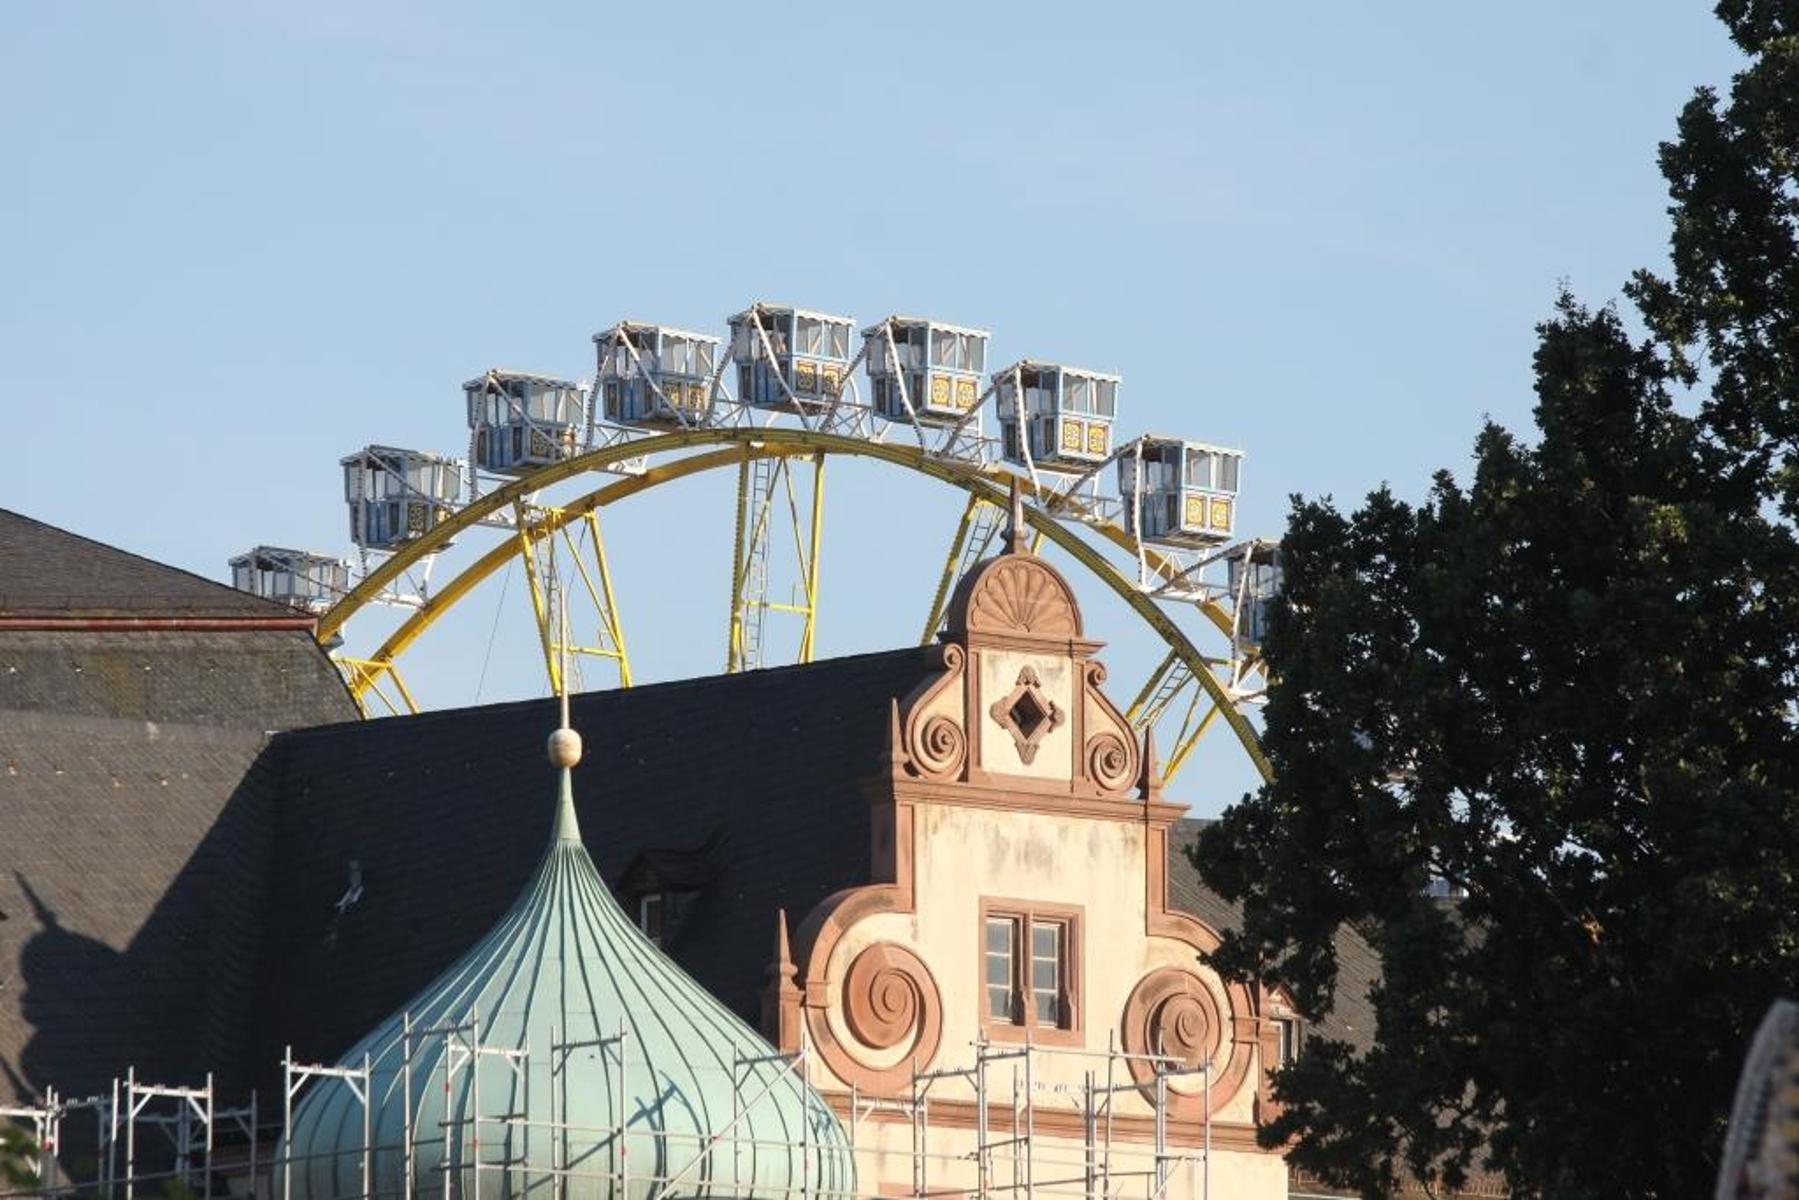 Der Heimatverein Darmstädter Heiner e.V. organisiert das seit 1951 statt findende Darmstädter Heinerfest, das immer am ersten Juli-Wochenende statt findet. Das Heinerfest ist eines der vielfältigsten Innenstadtfest Deutschlands und bietet in der Innenstadt rund um das Schloss ein vielfältiges Pro...